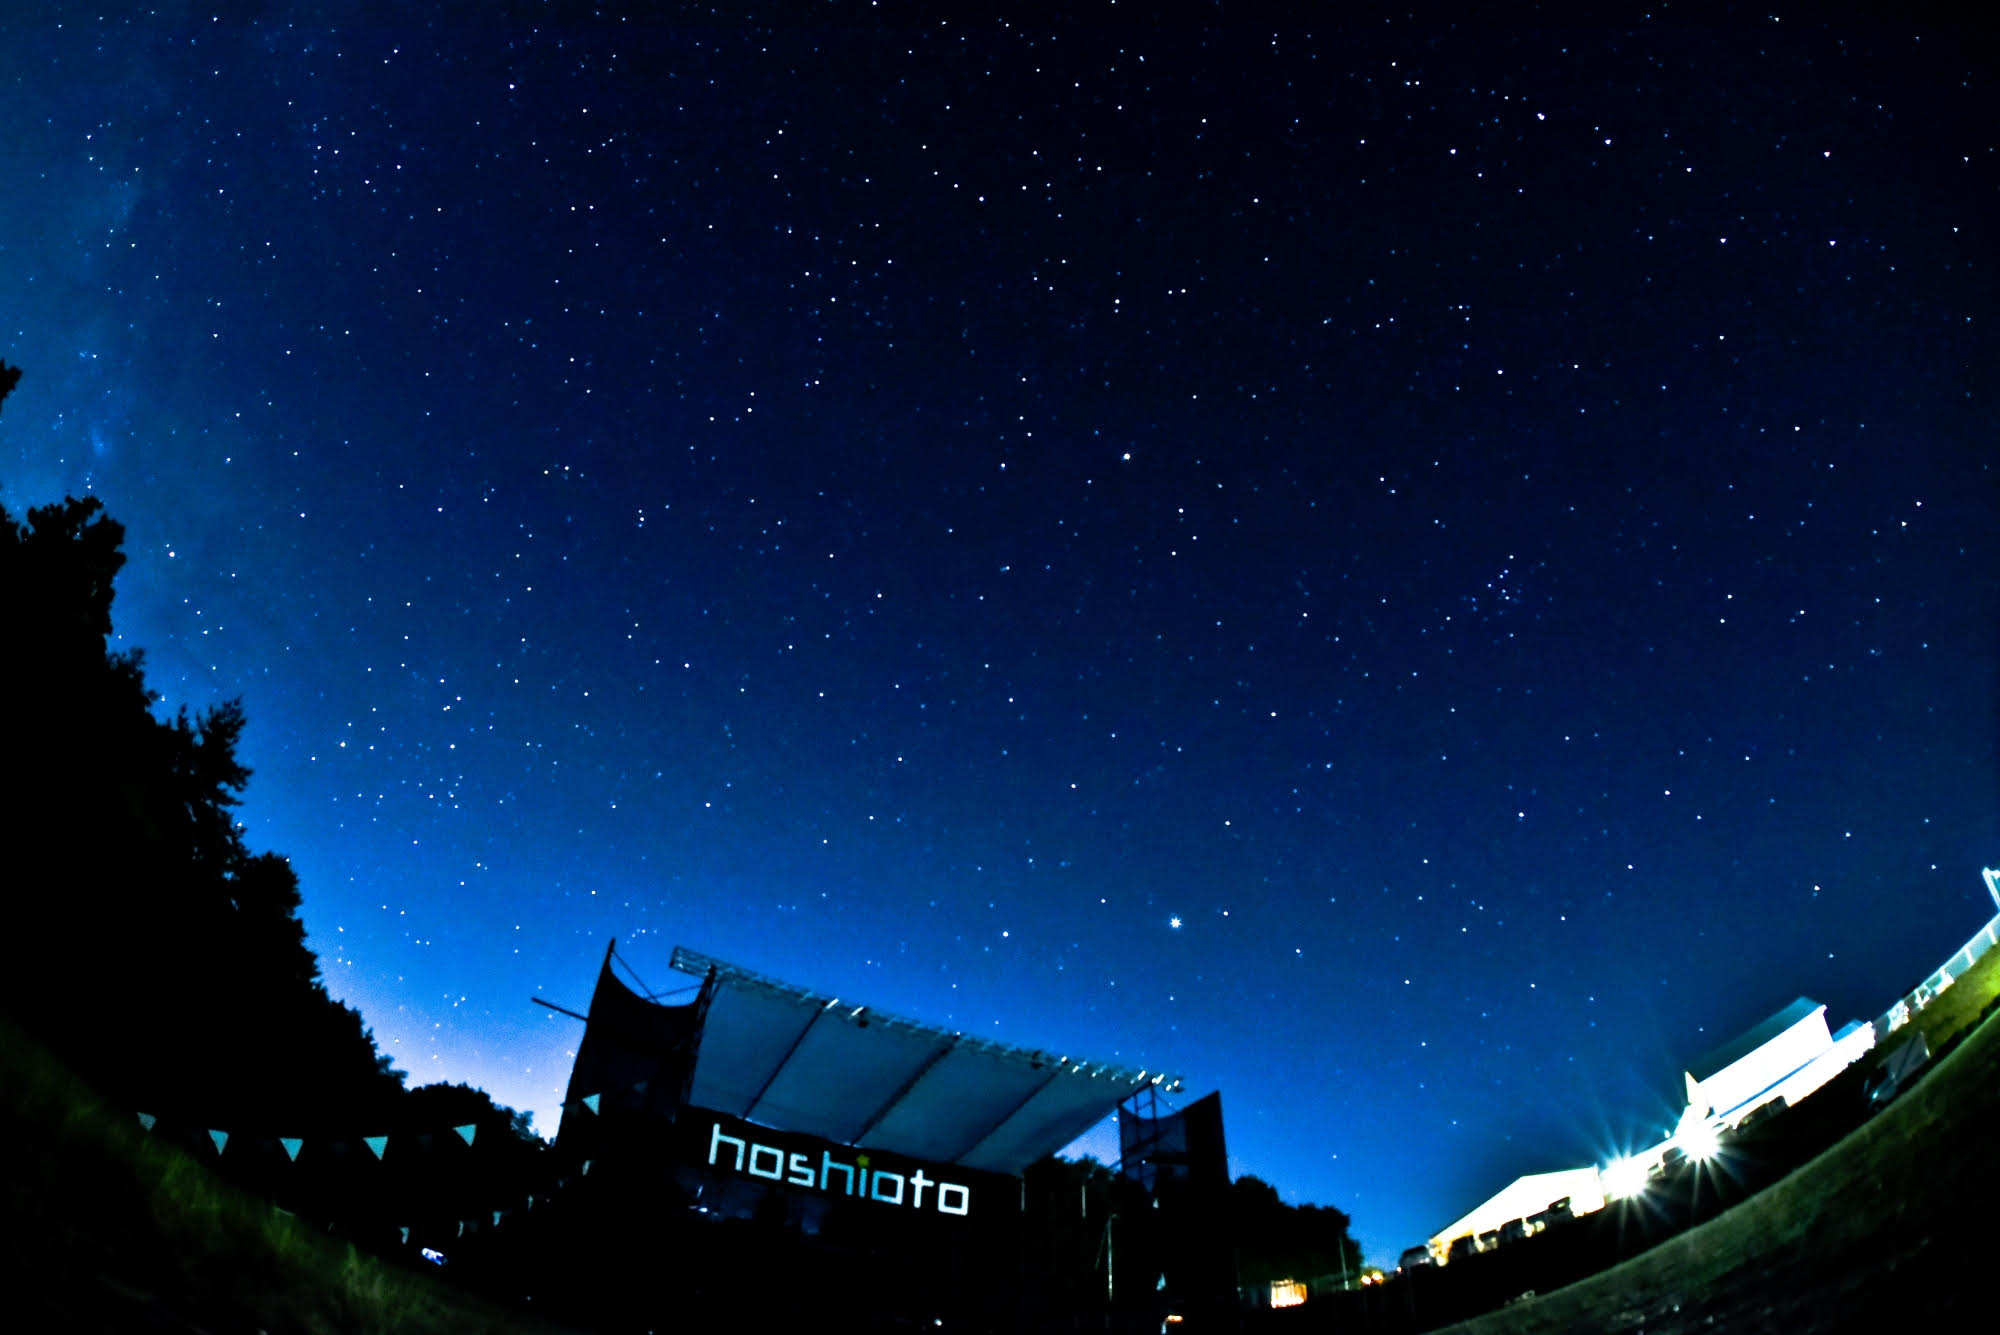 昨年、実際に撮影された当日の写真。「hoshioto」の名に相応しく満天の星が広がっている。(hoshioto提供)